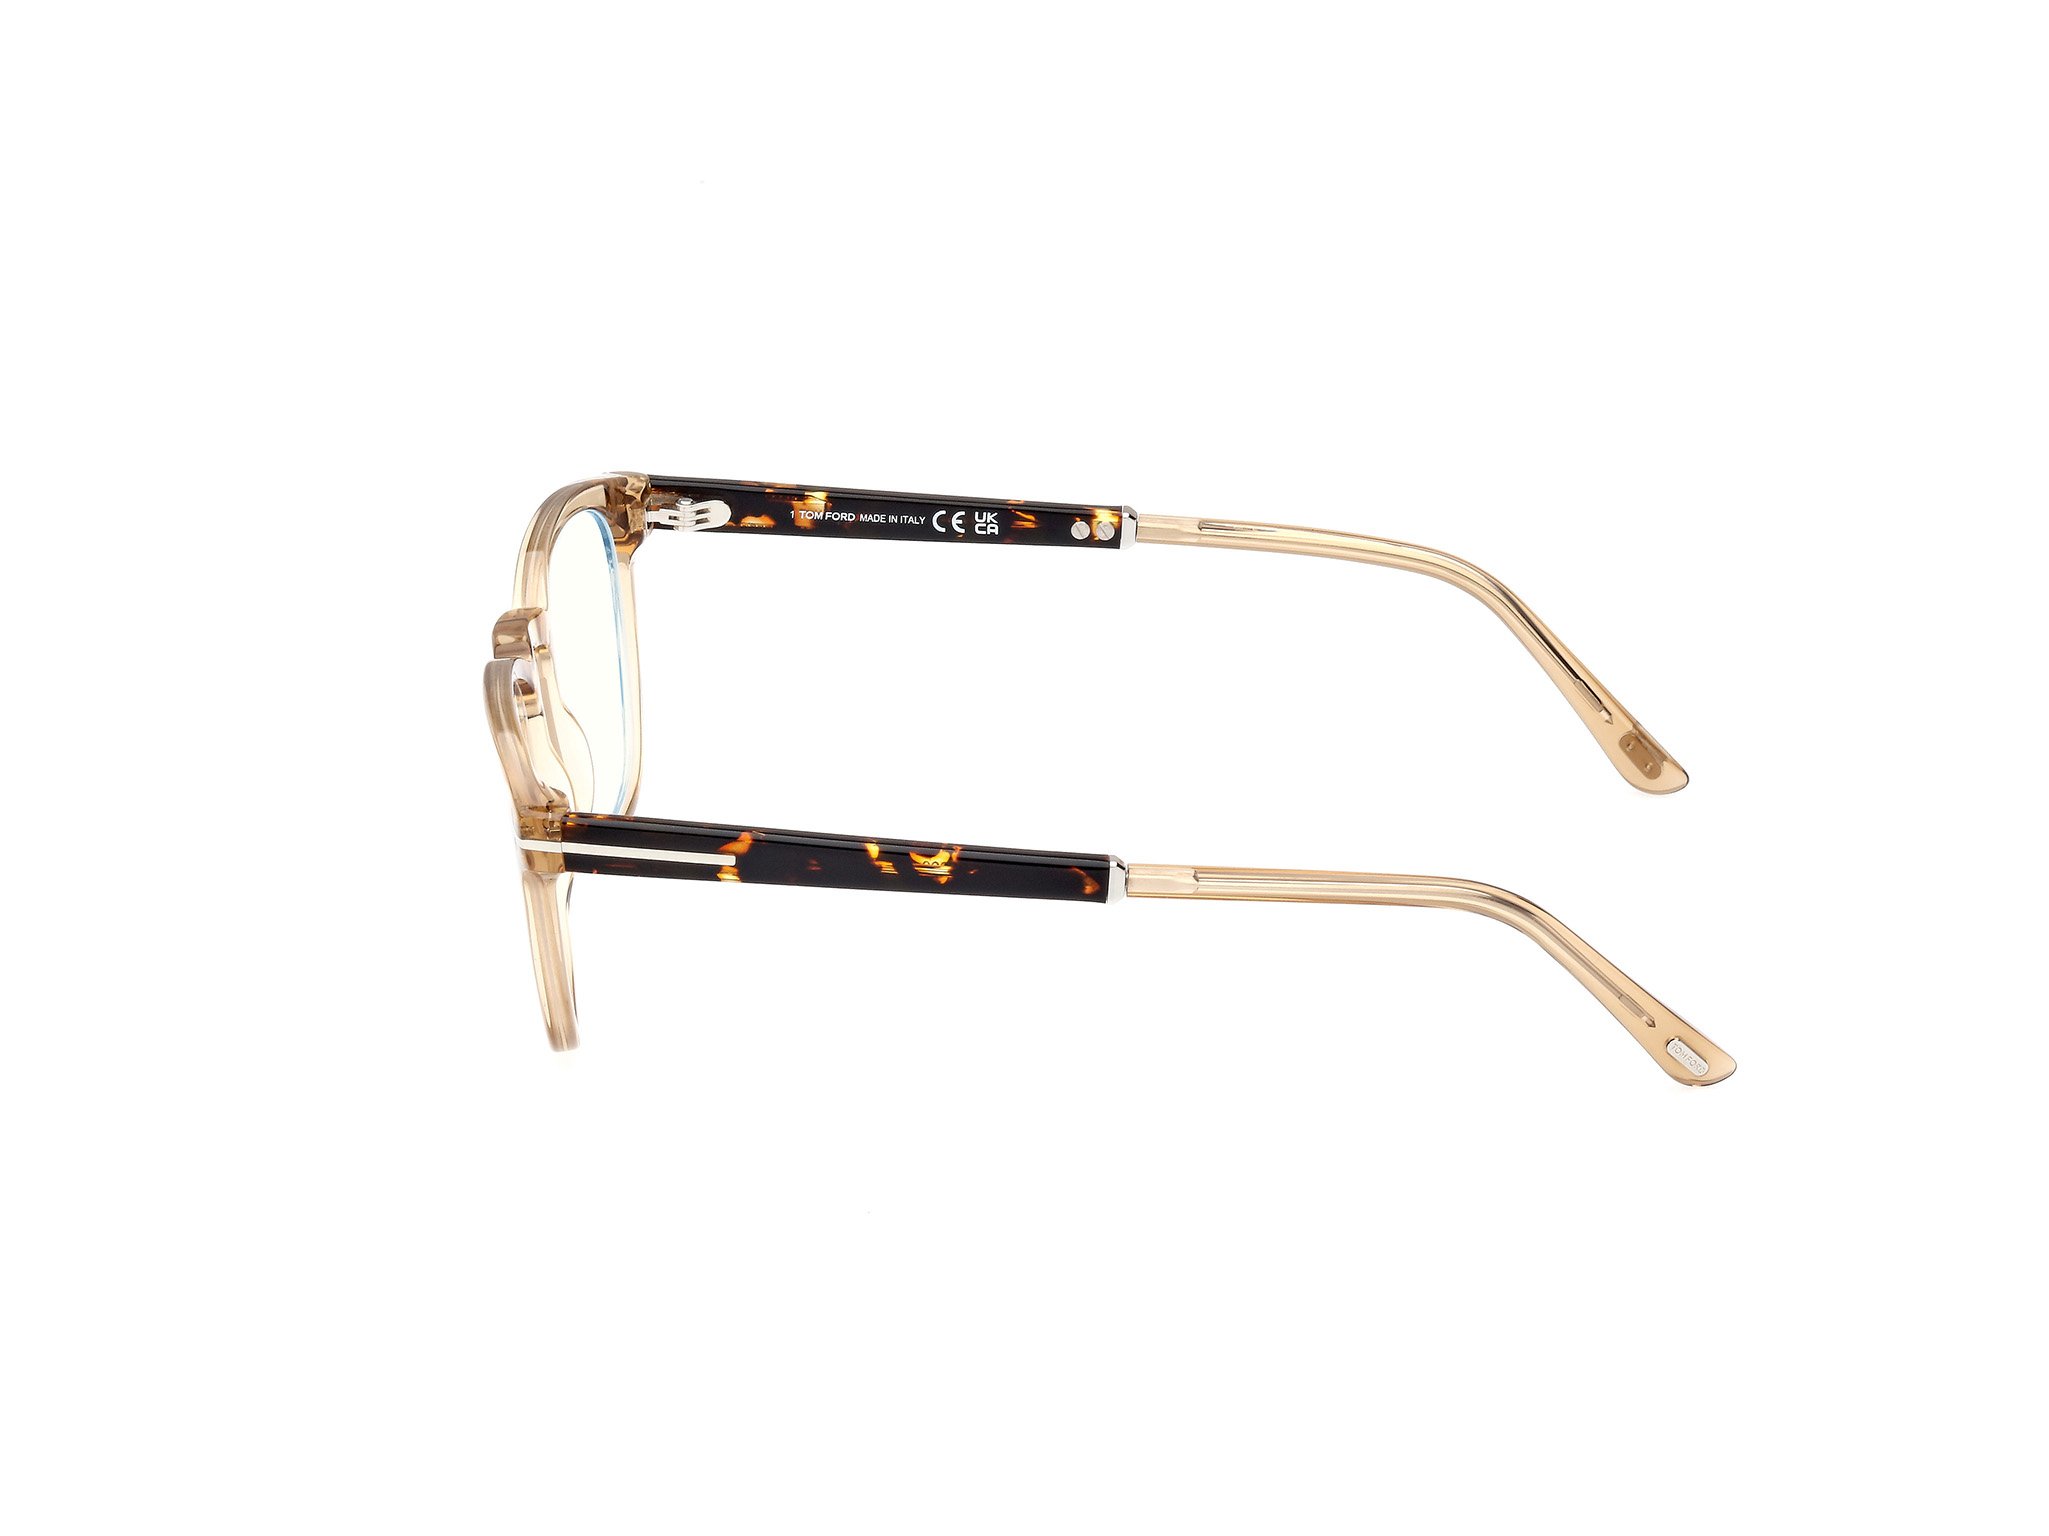 Das Bild zeigt die Korrektionsbrille FT5890-B 047 von der Marke Tom Ford in gold.